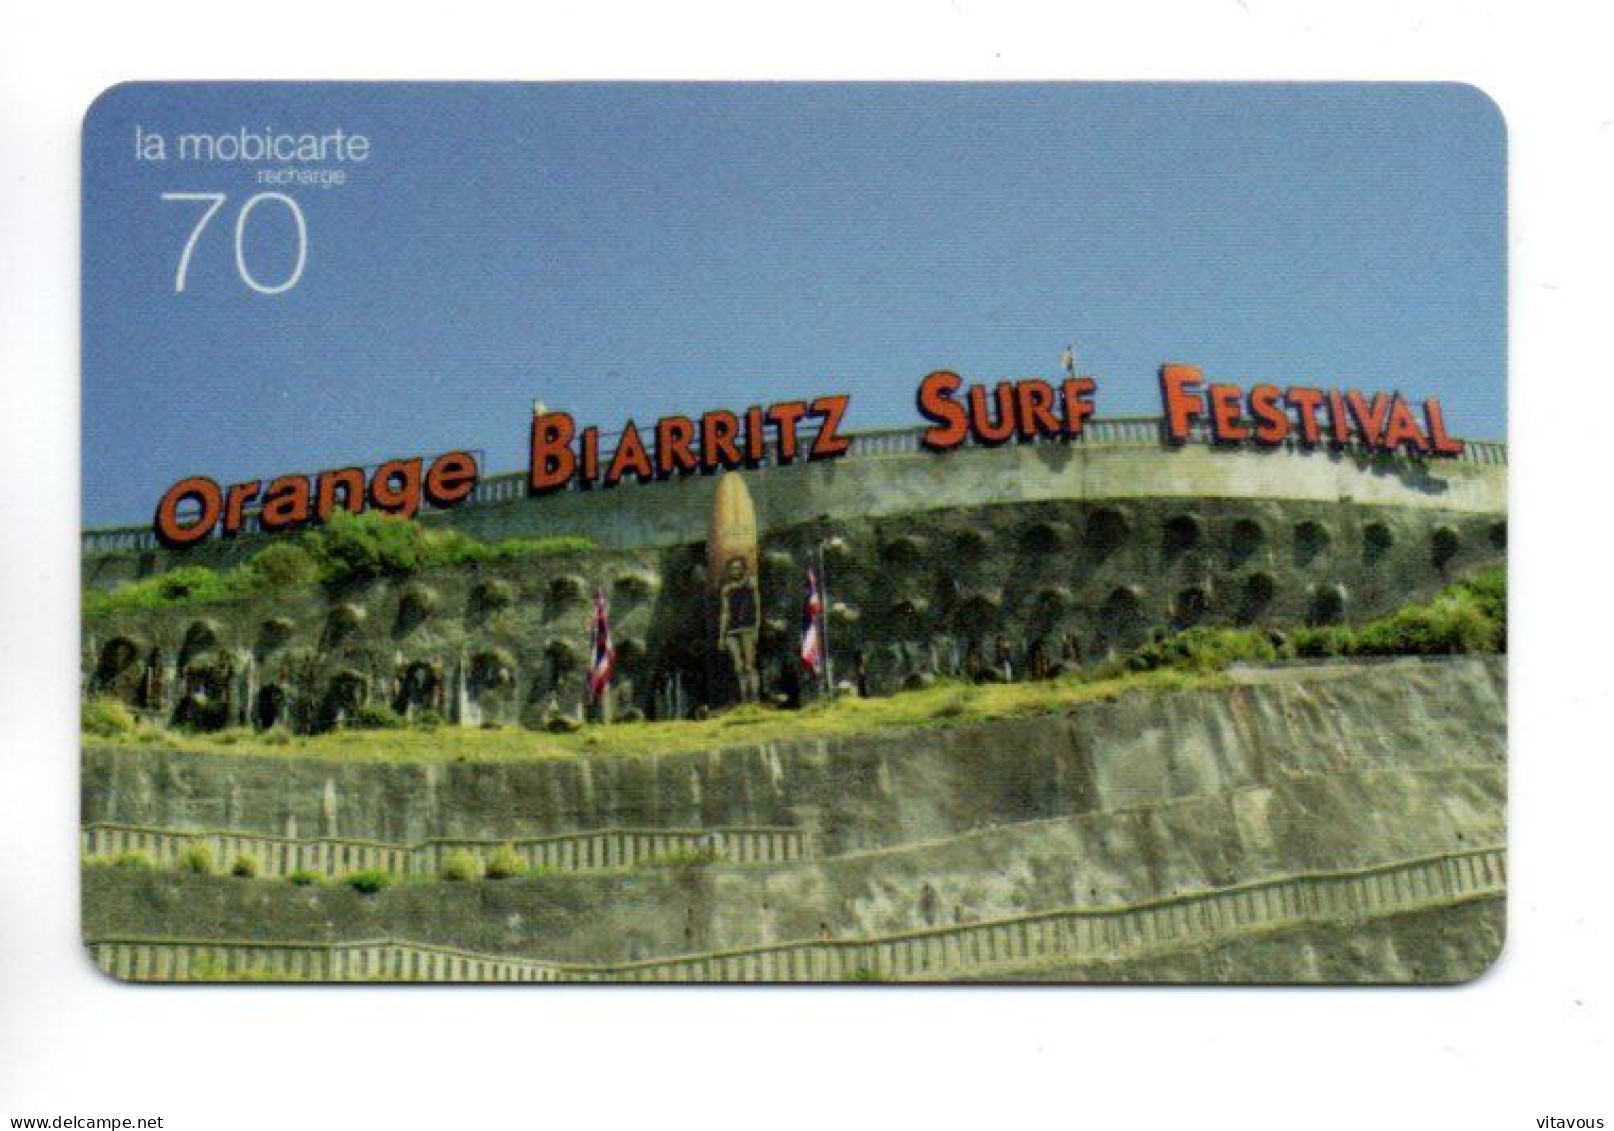 Festival De Surf Biarritz - Mobicarte Recharge Orange  Carte Prépayée France Card  (K 104) - Mobicartes (recharges)